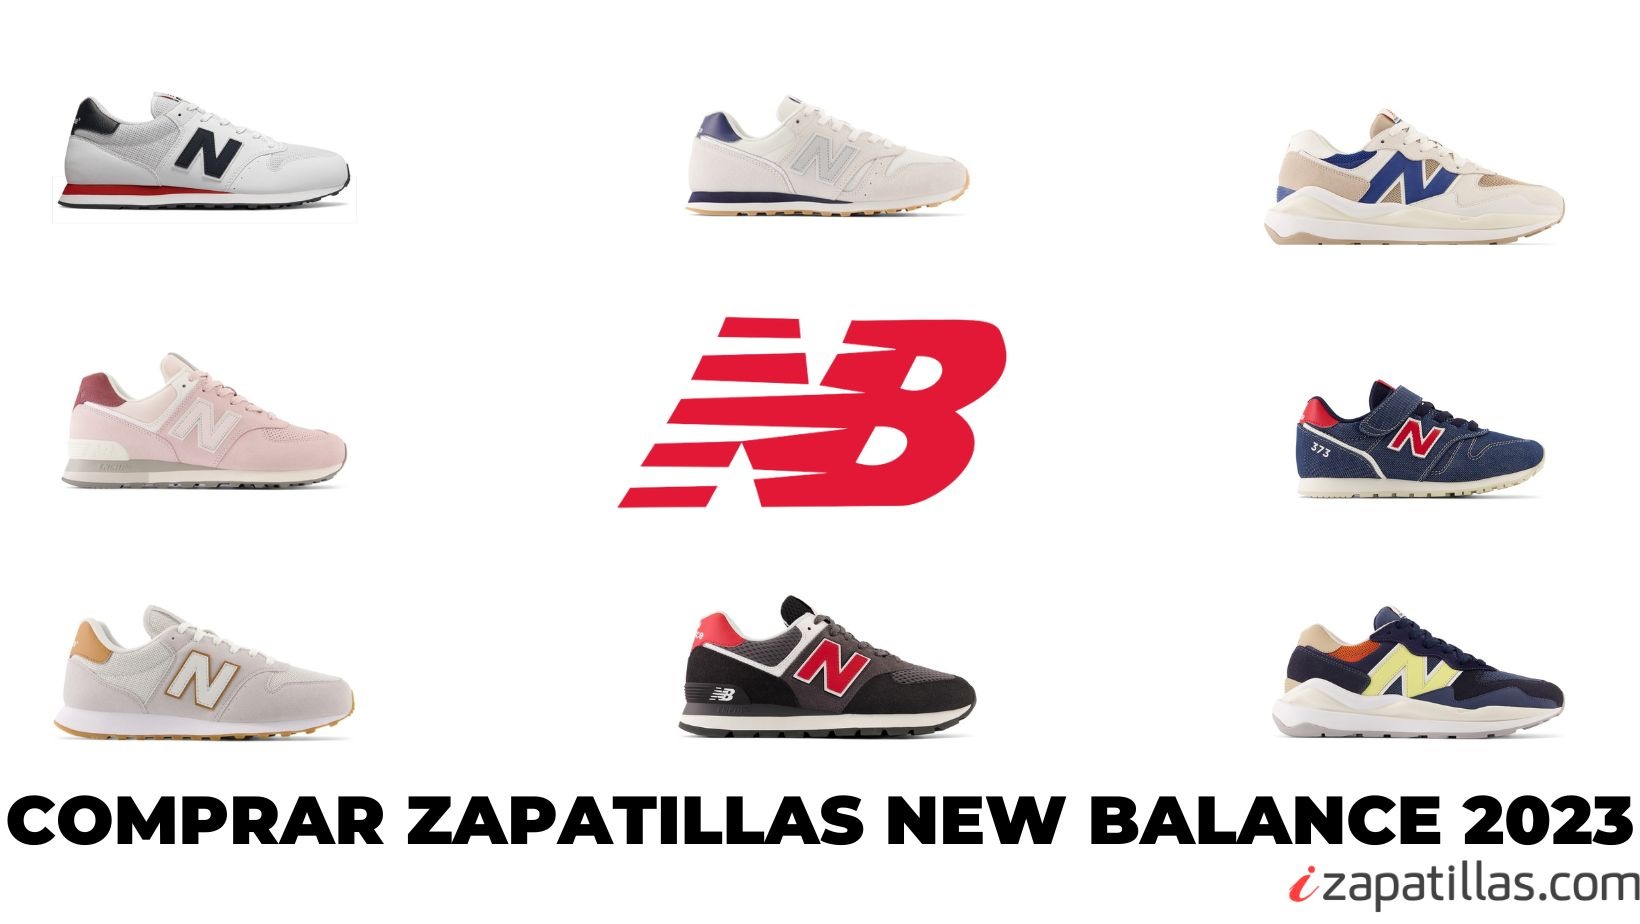 Comprar New Balance 2023 // Comprar Zapatillas New Balance baratas // Comprar Zapatillas New Balance online.